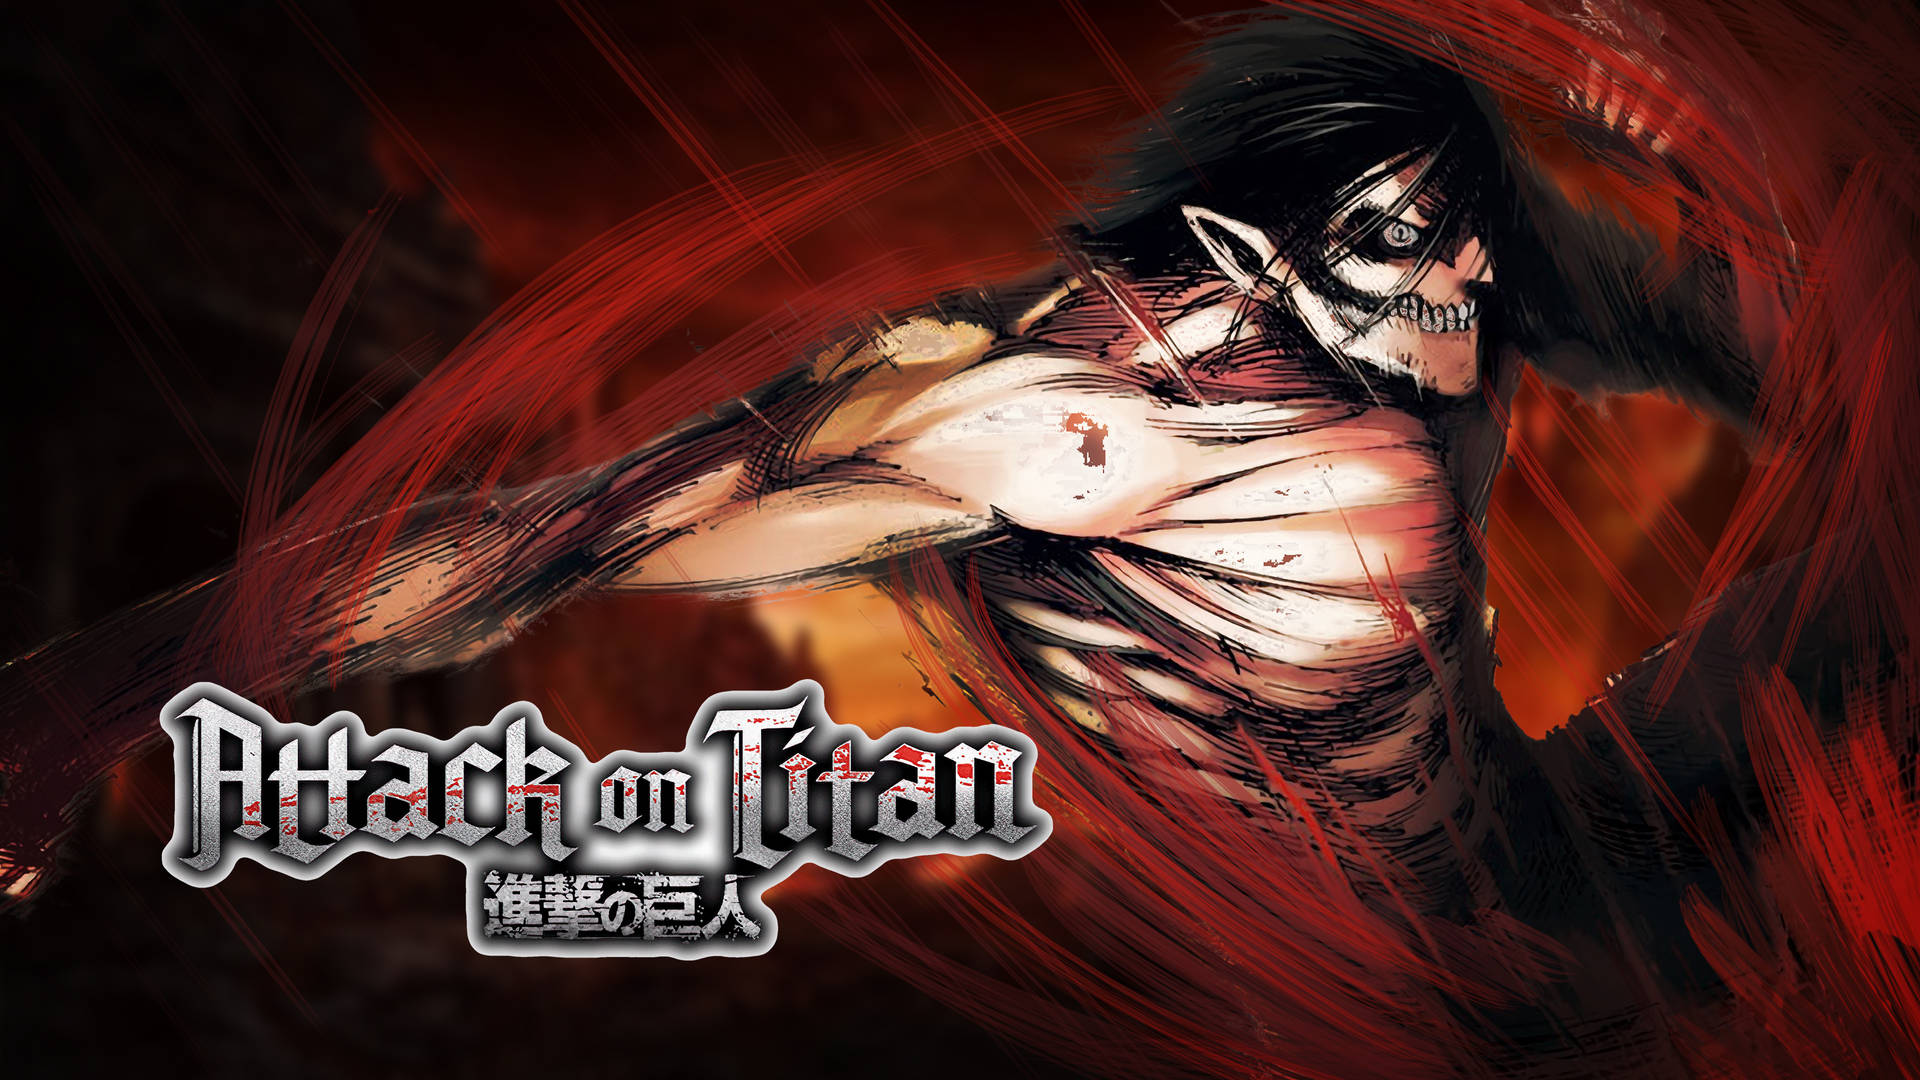 Steam Workshop::Attack on Titan - Shingeki no Kyojin 4K